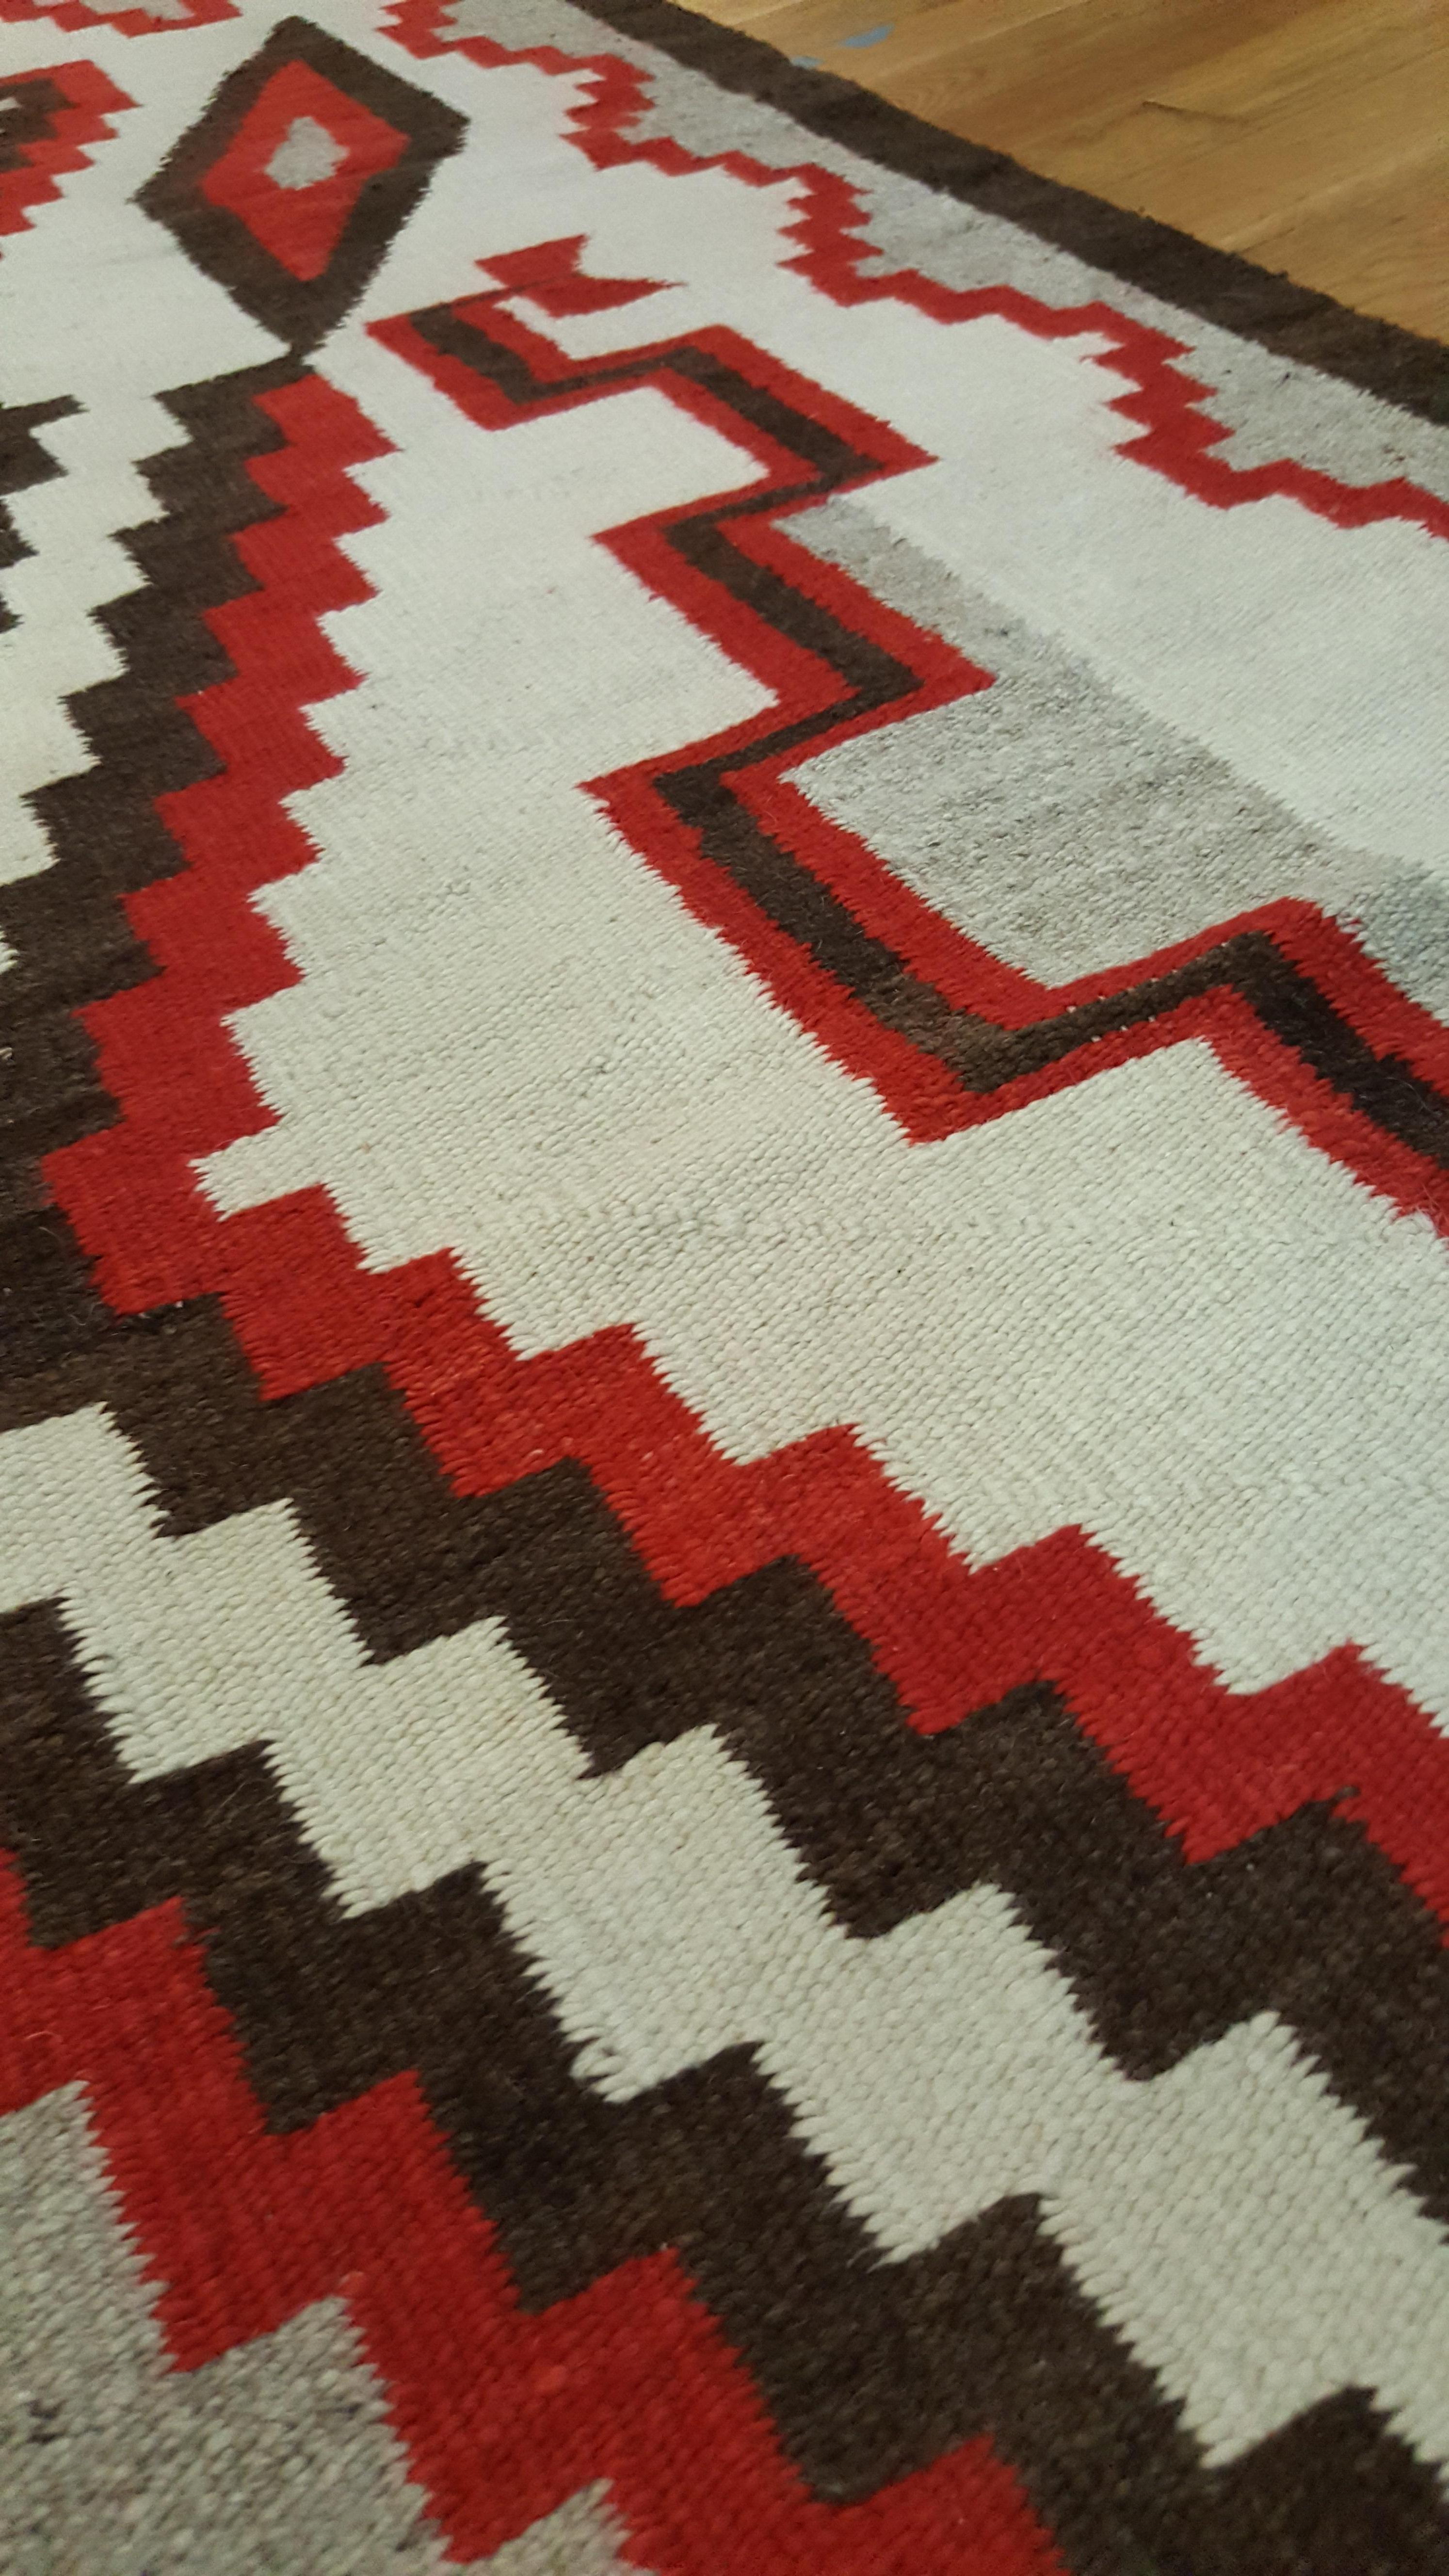 Vintage Navajo Carpet, Oriental Rug, Handmade Wool Rug, Red, Black, Ivory, Bold 1